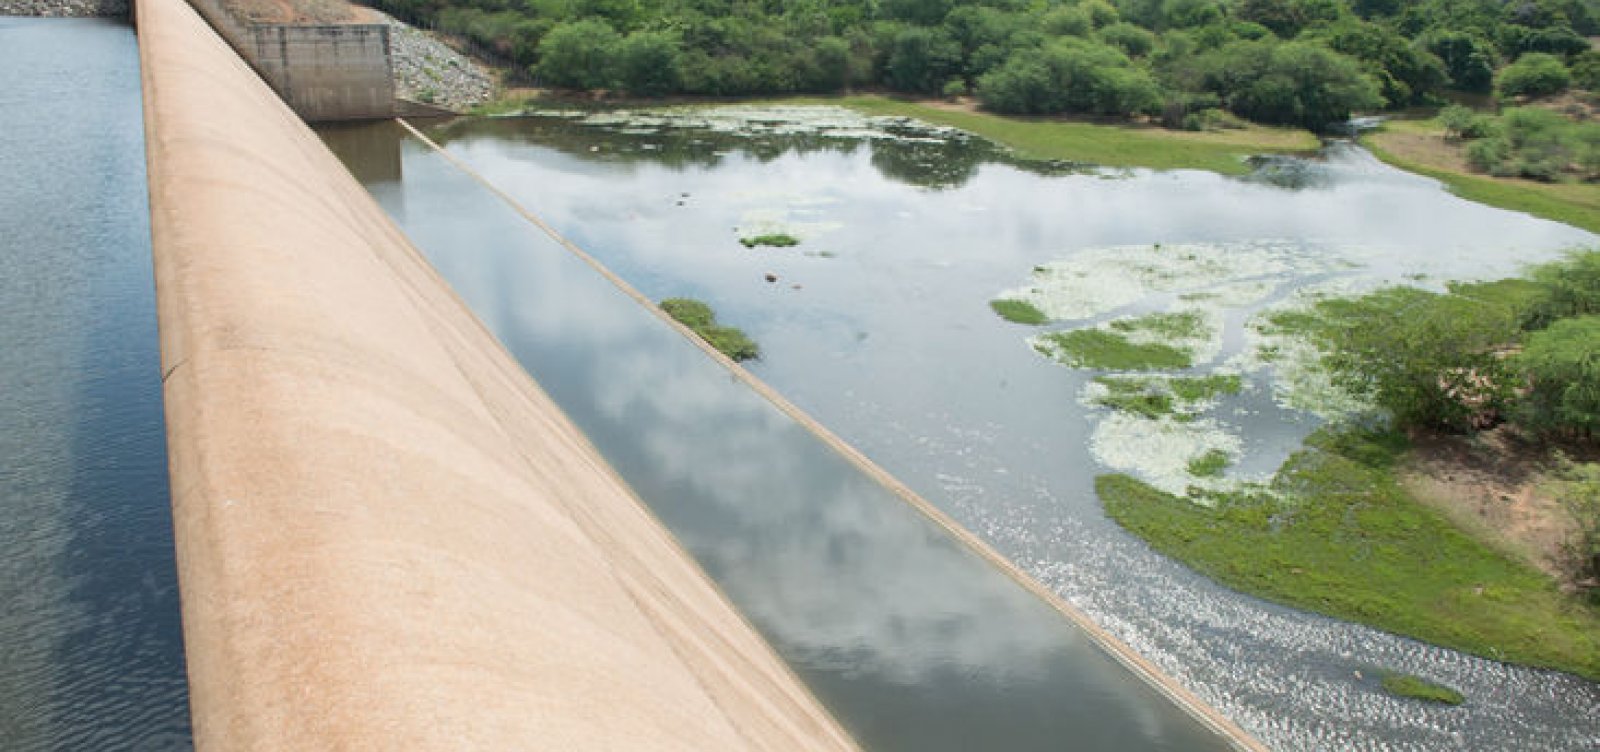 Governo abre licitação para fazer drenagem na barragem de Ponto Novo após atingir 100% da capacidade